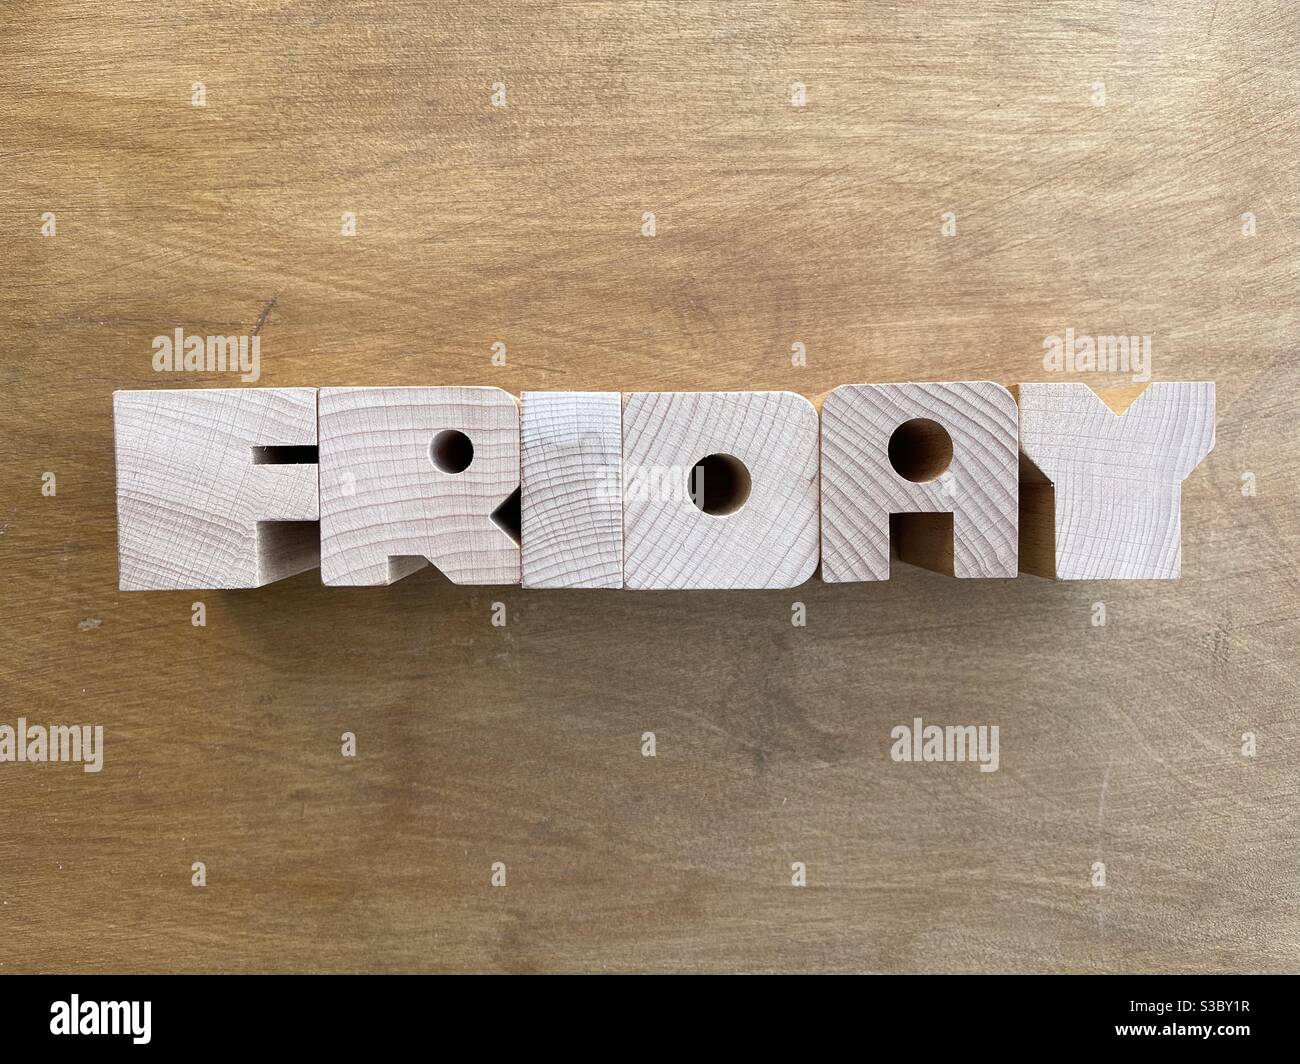 Venerdì, giorno della settimana composto da lettere in legno su tavola di legno Foto Stock